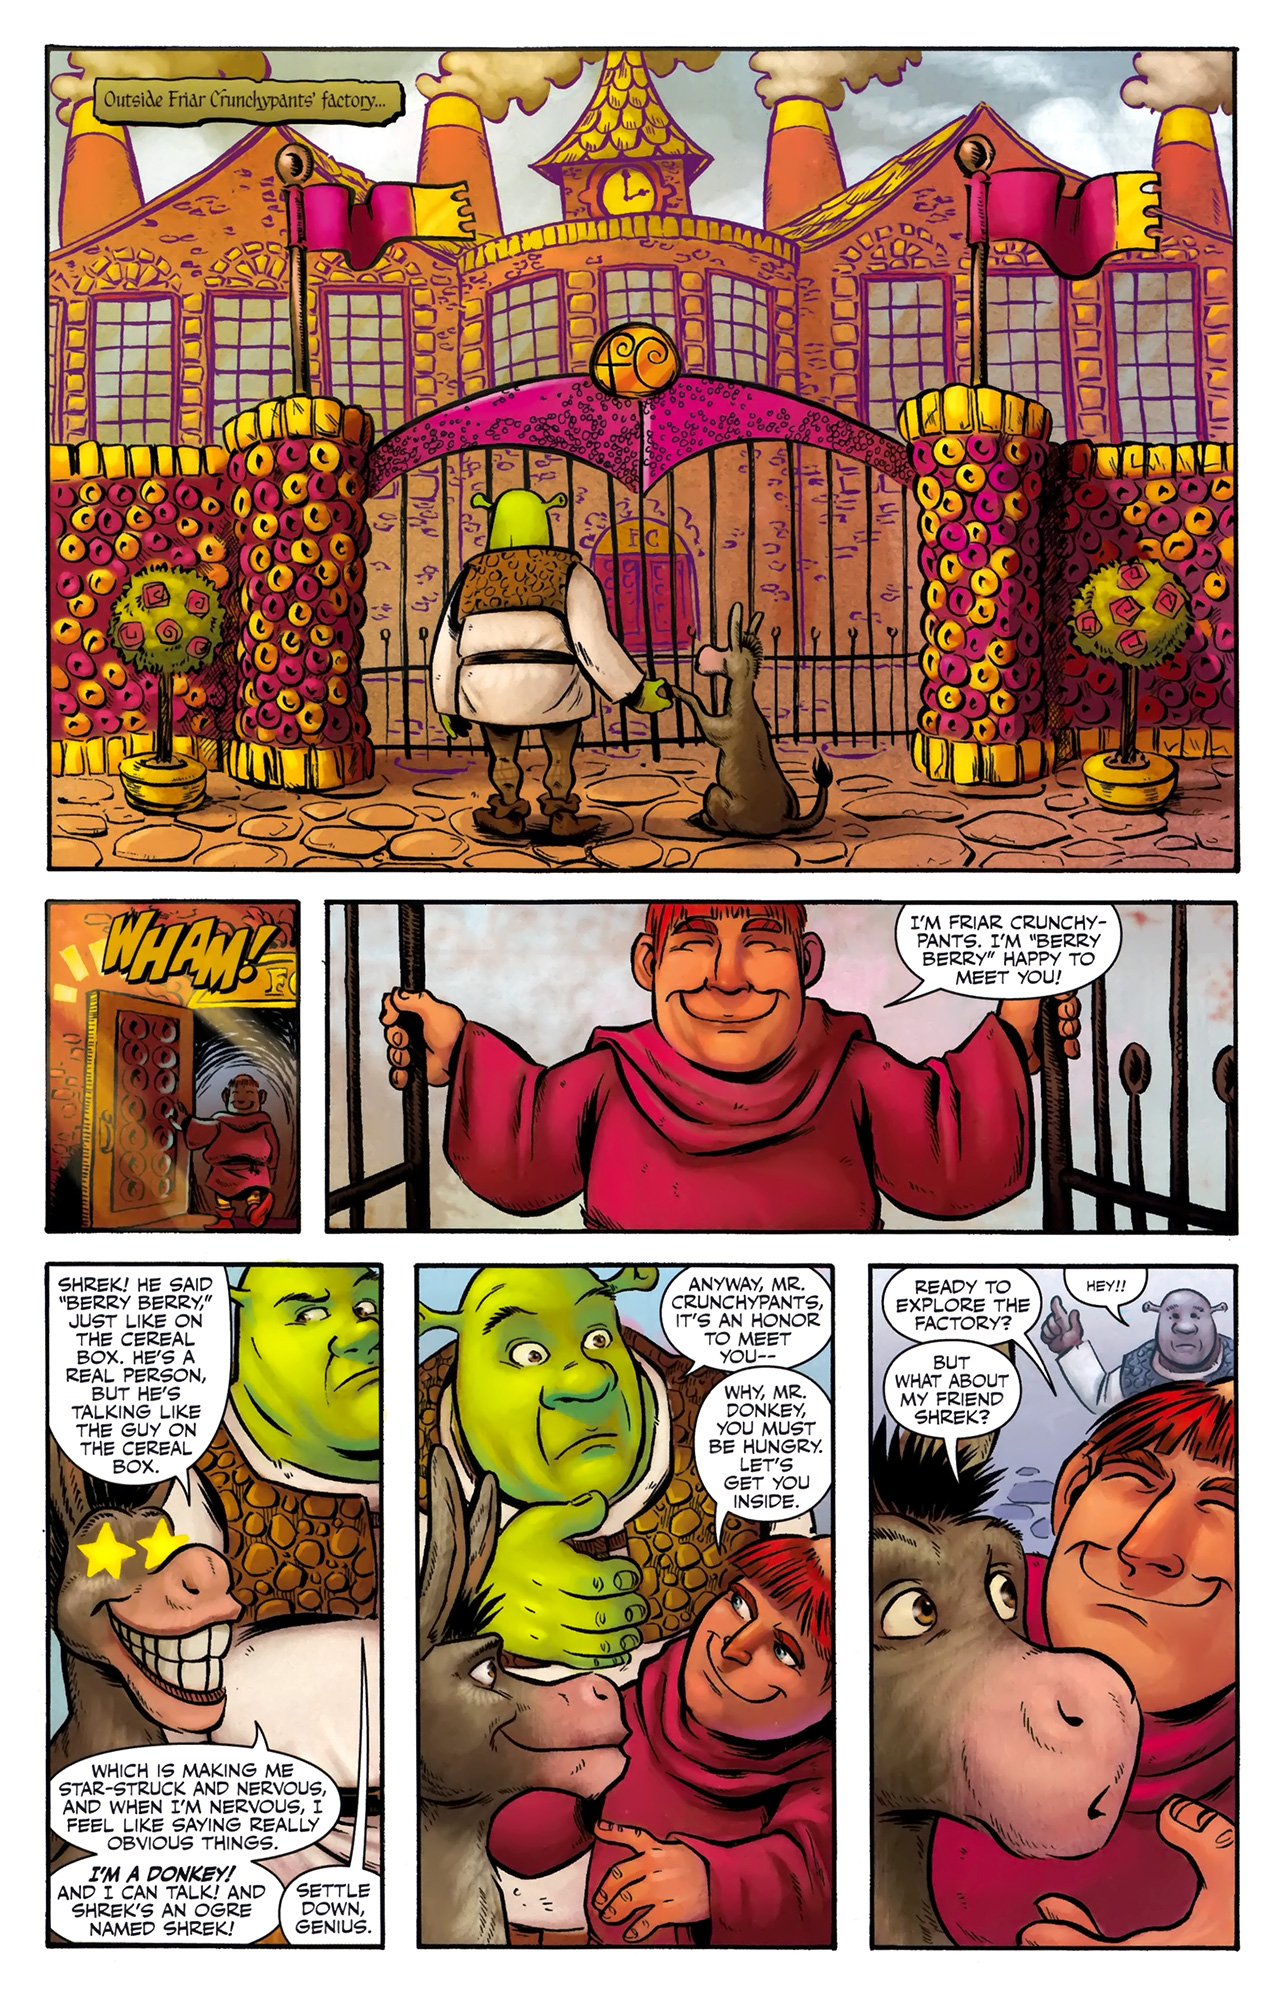 Shrek 1 2 Read Shrek 1 2 Comic Online In High Quality Read Full